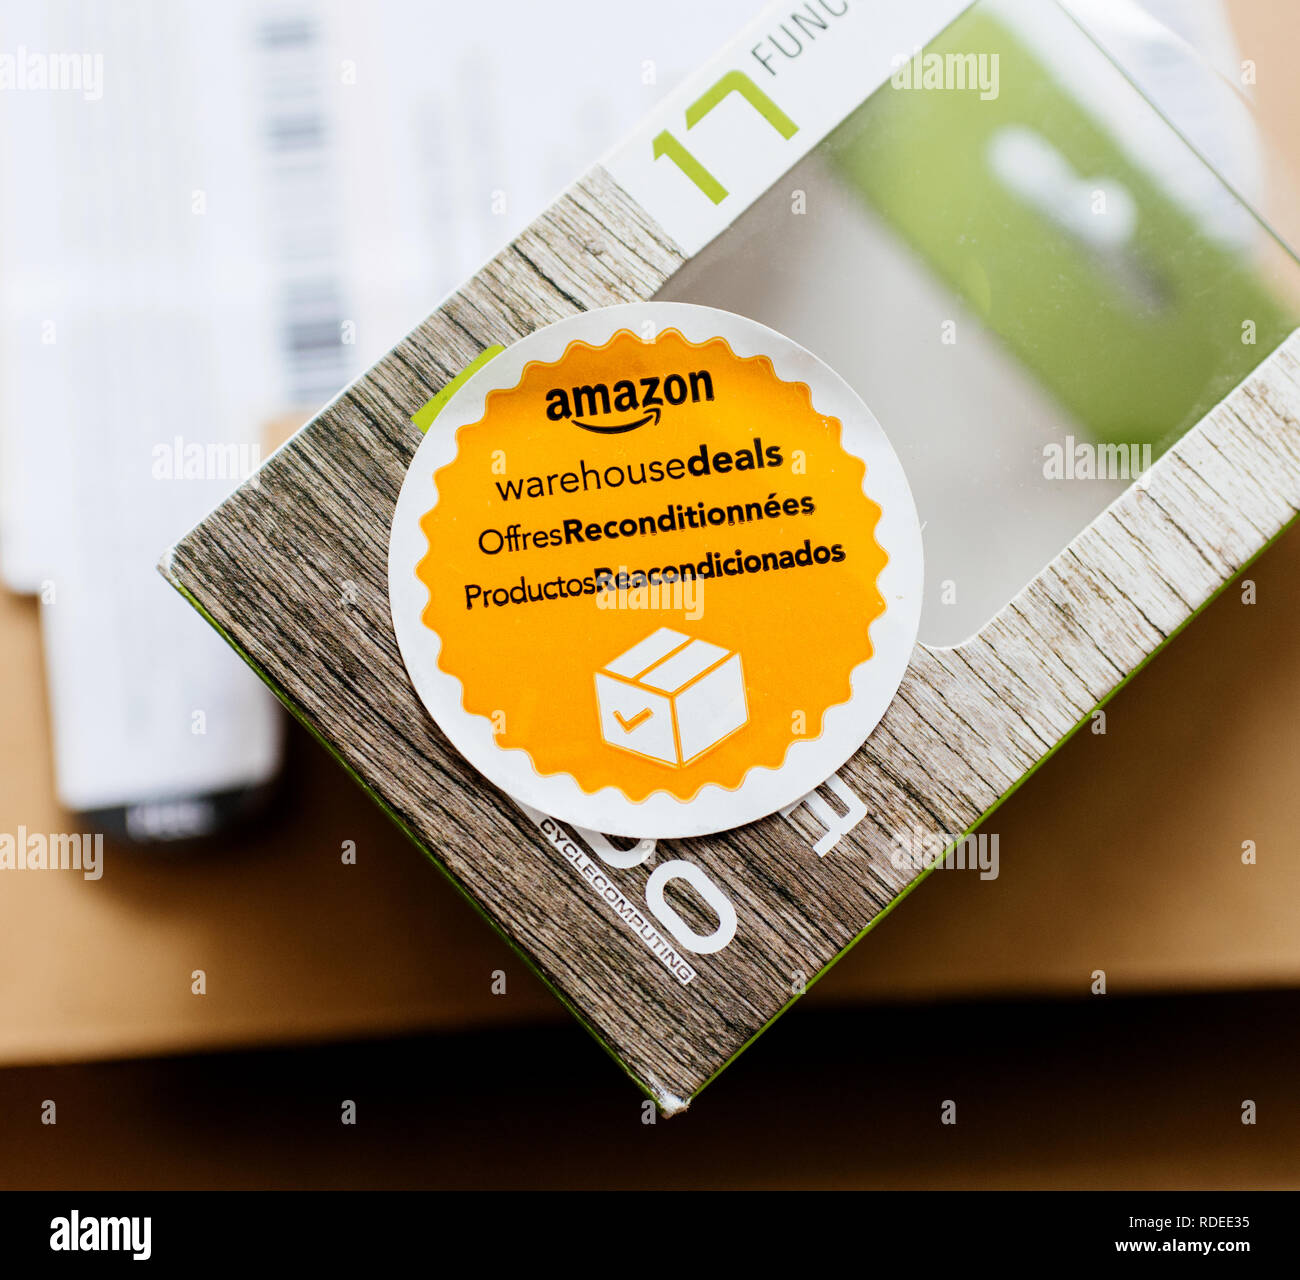 Parigi, Francia - Apr 24, 2018: Amazon offerte di magazzino offres reconditionnees productos reacondicionados adesivo sul nuovo oggetto acquistato online da il più grande rivenditore online Foto Stock